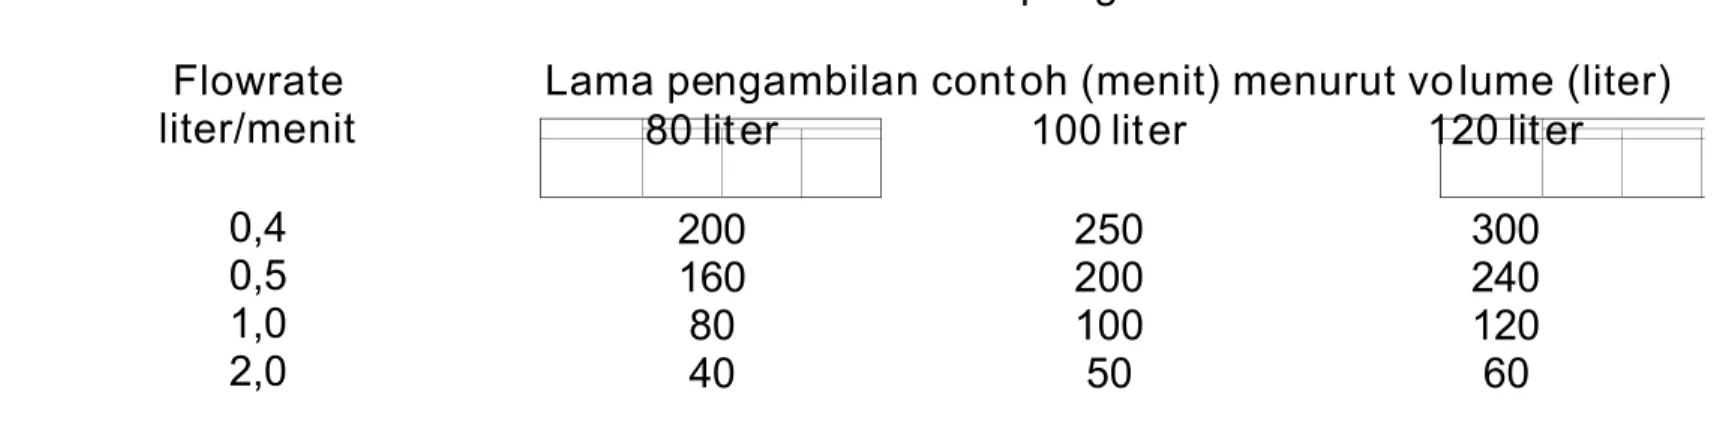 Tabel 1  Variasi flowrate dan lama pengambilan con toh